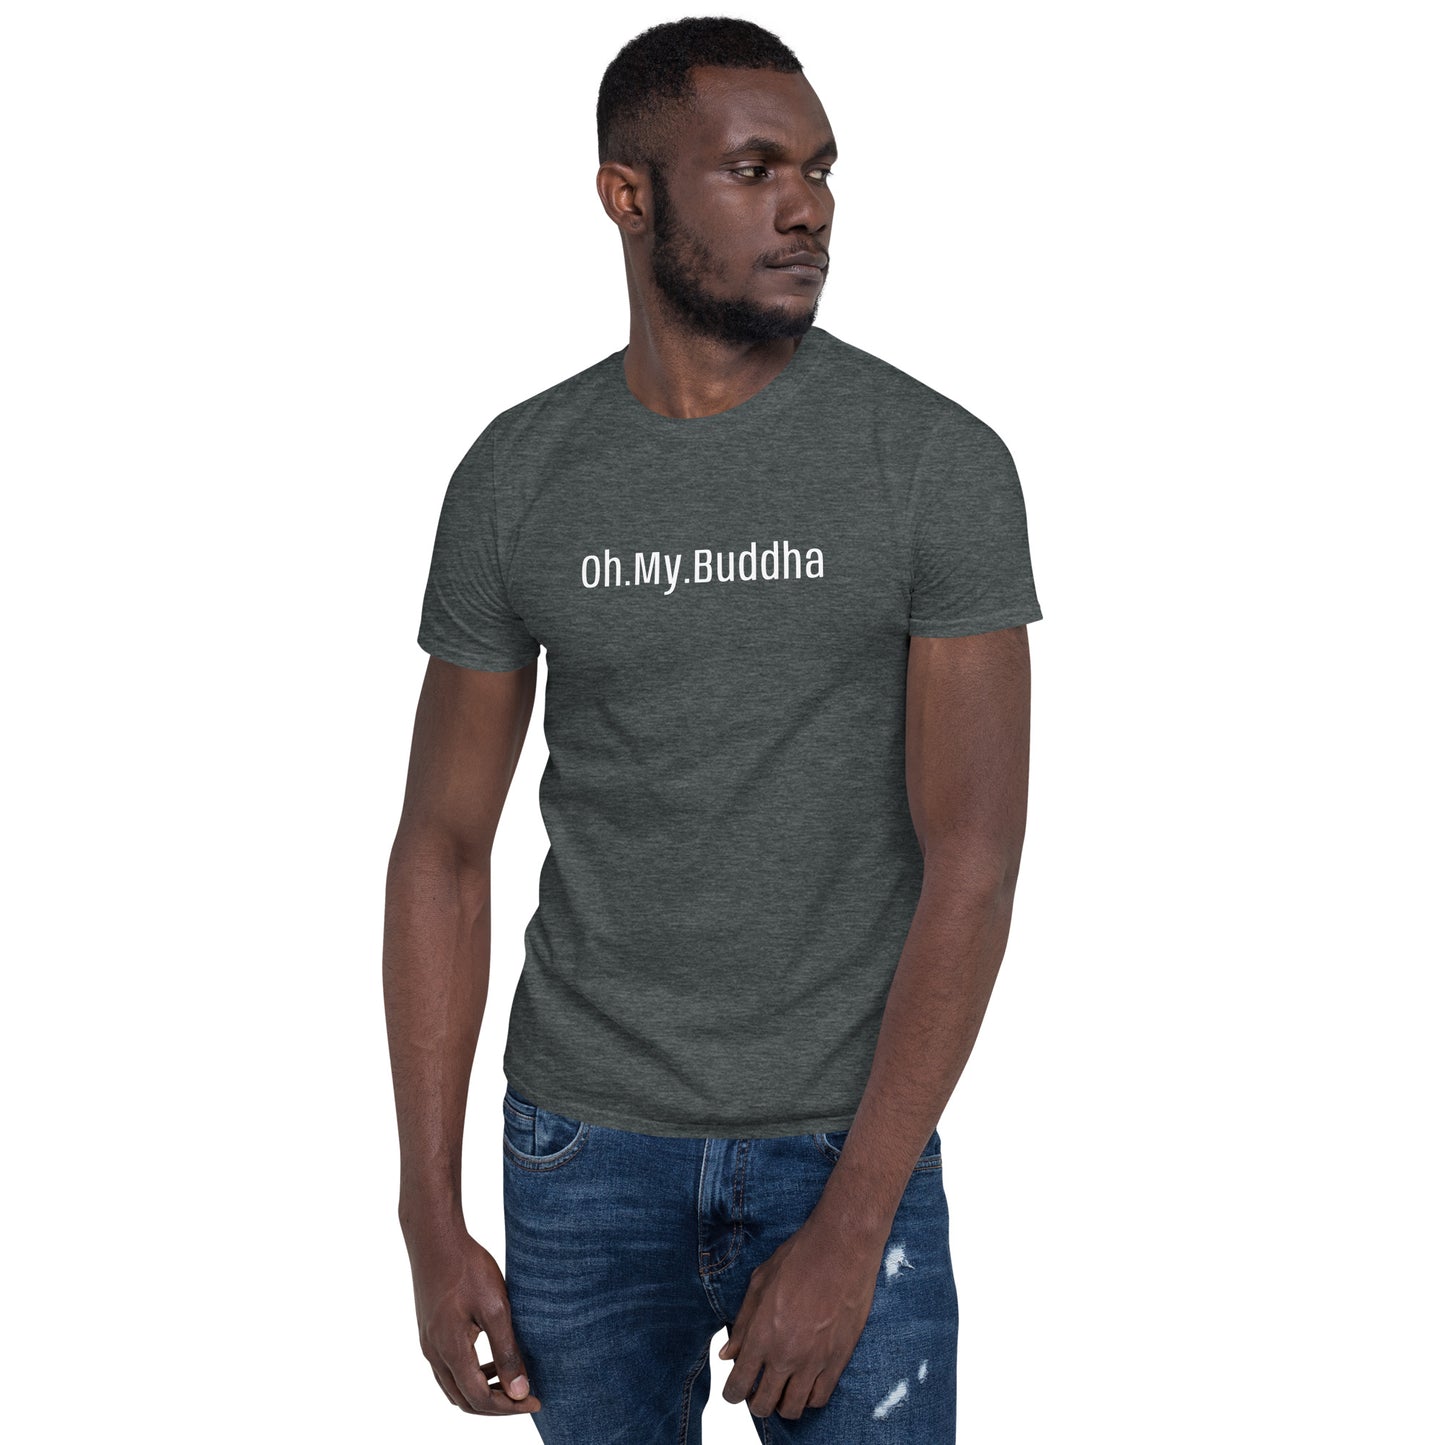 Oh.My.Buddha. - S/S Unisex T-Shirt